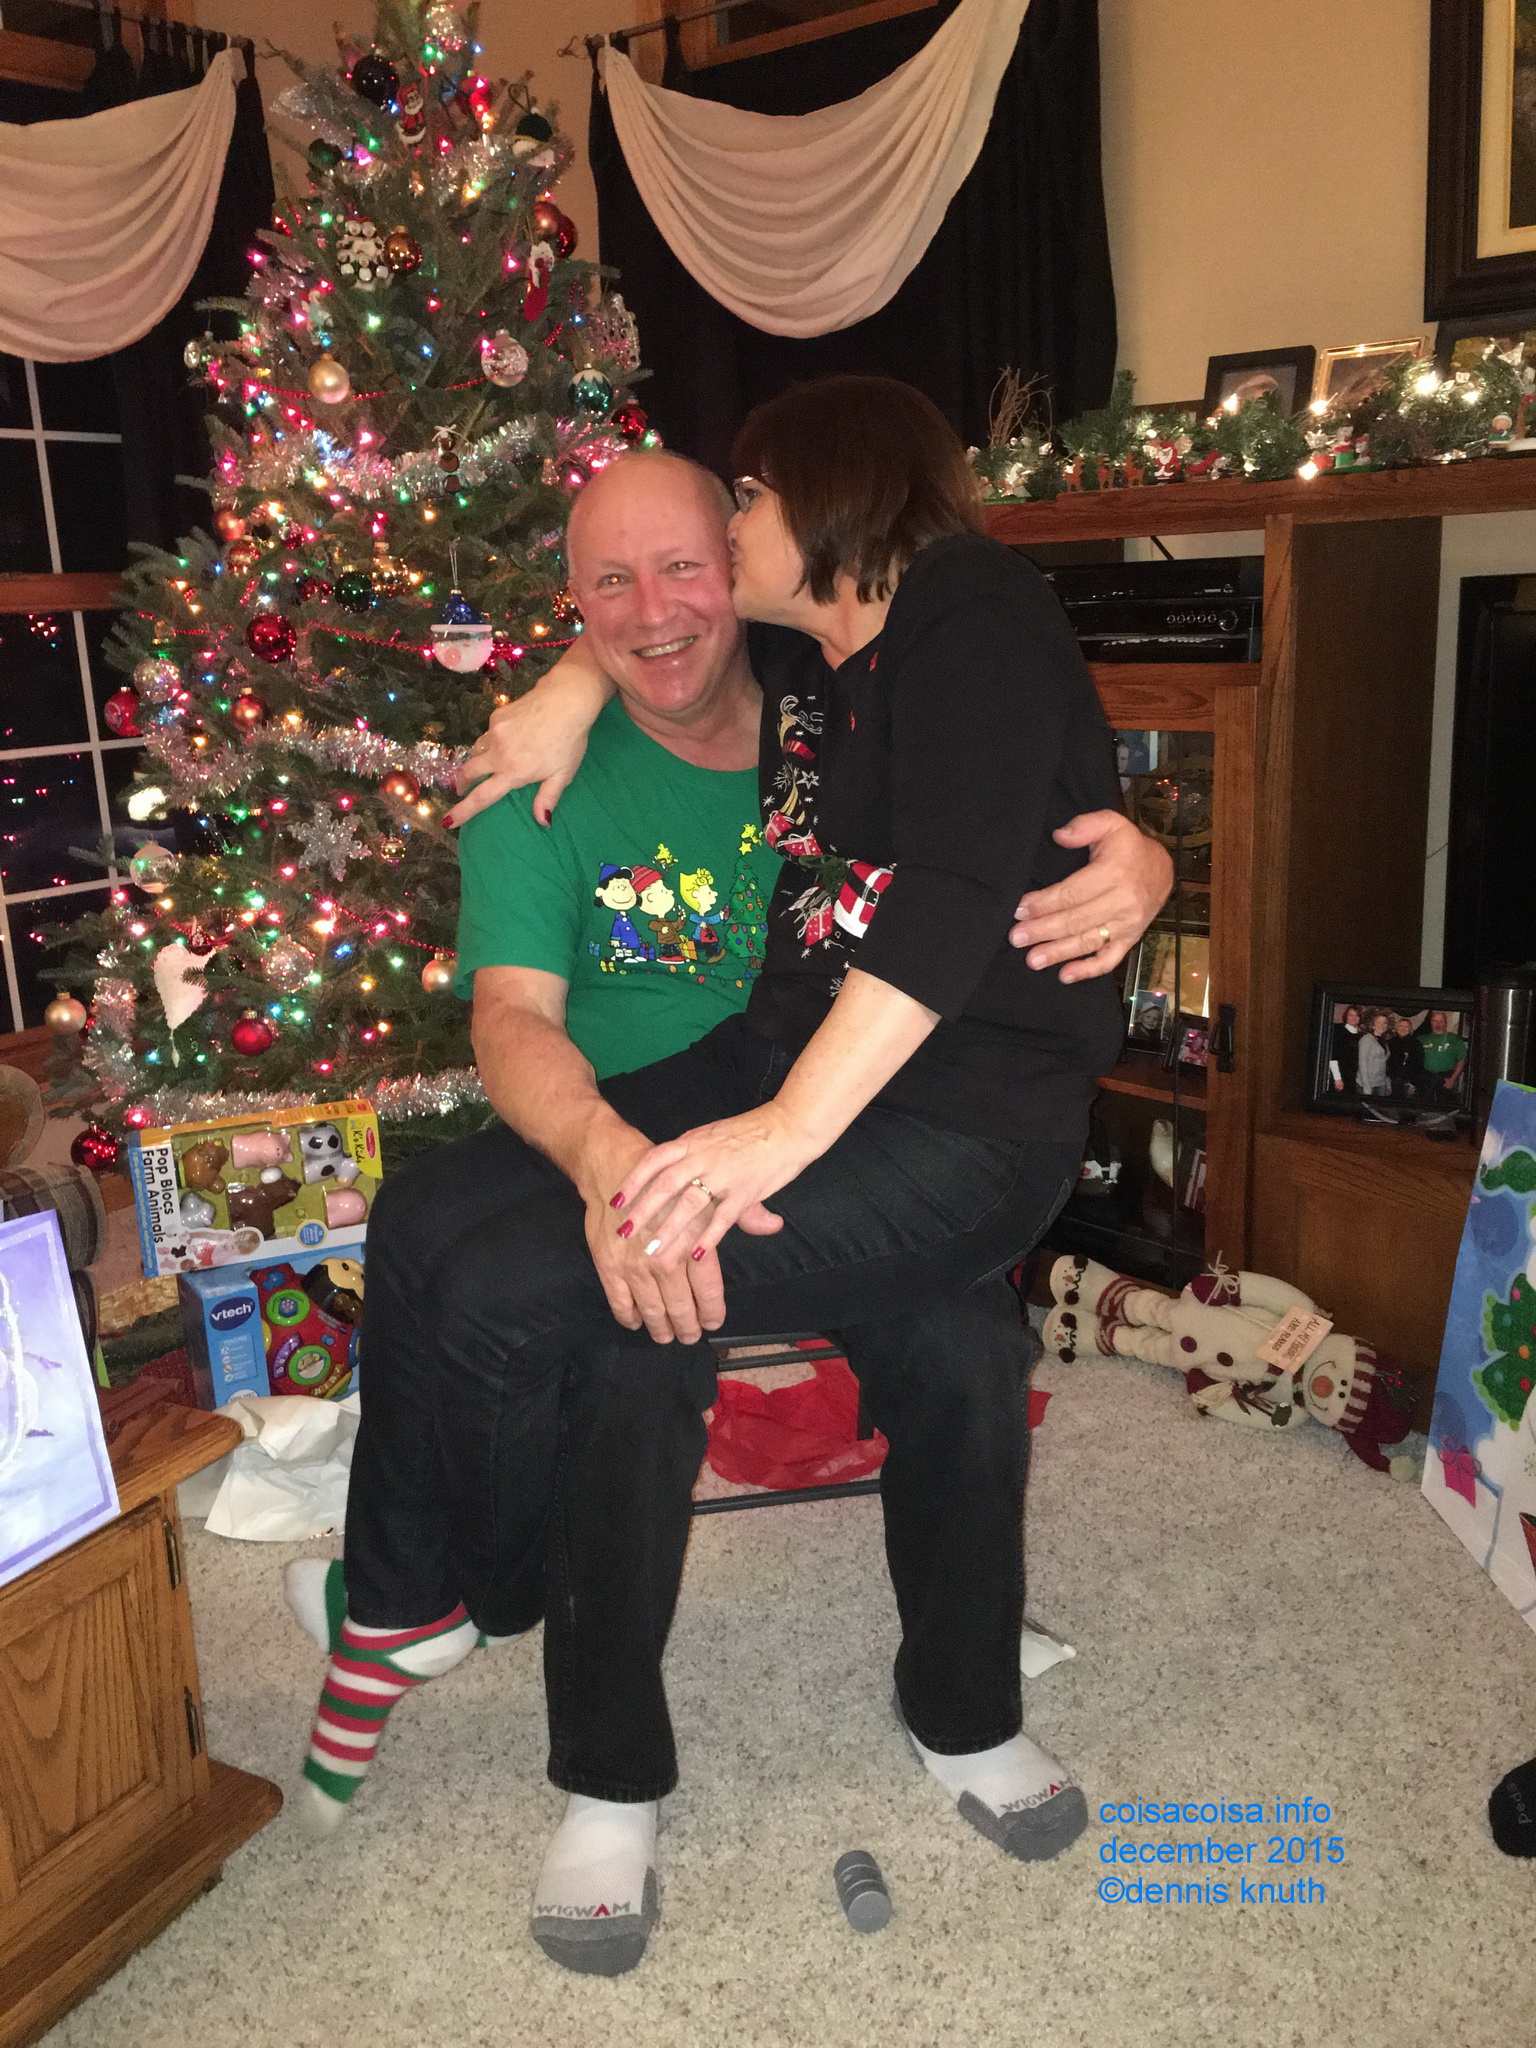 The Holiday Season: Gary and Sherri Xmas Happiness